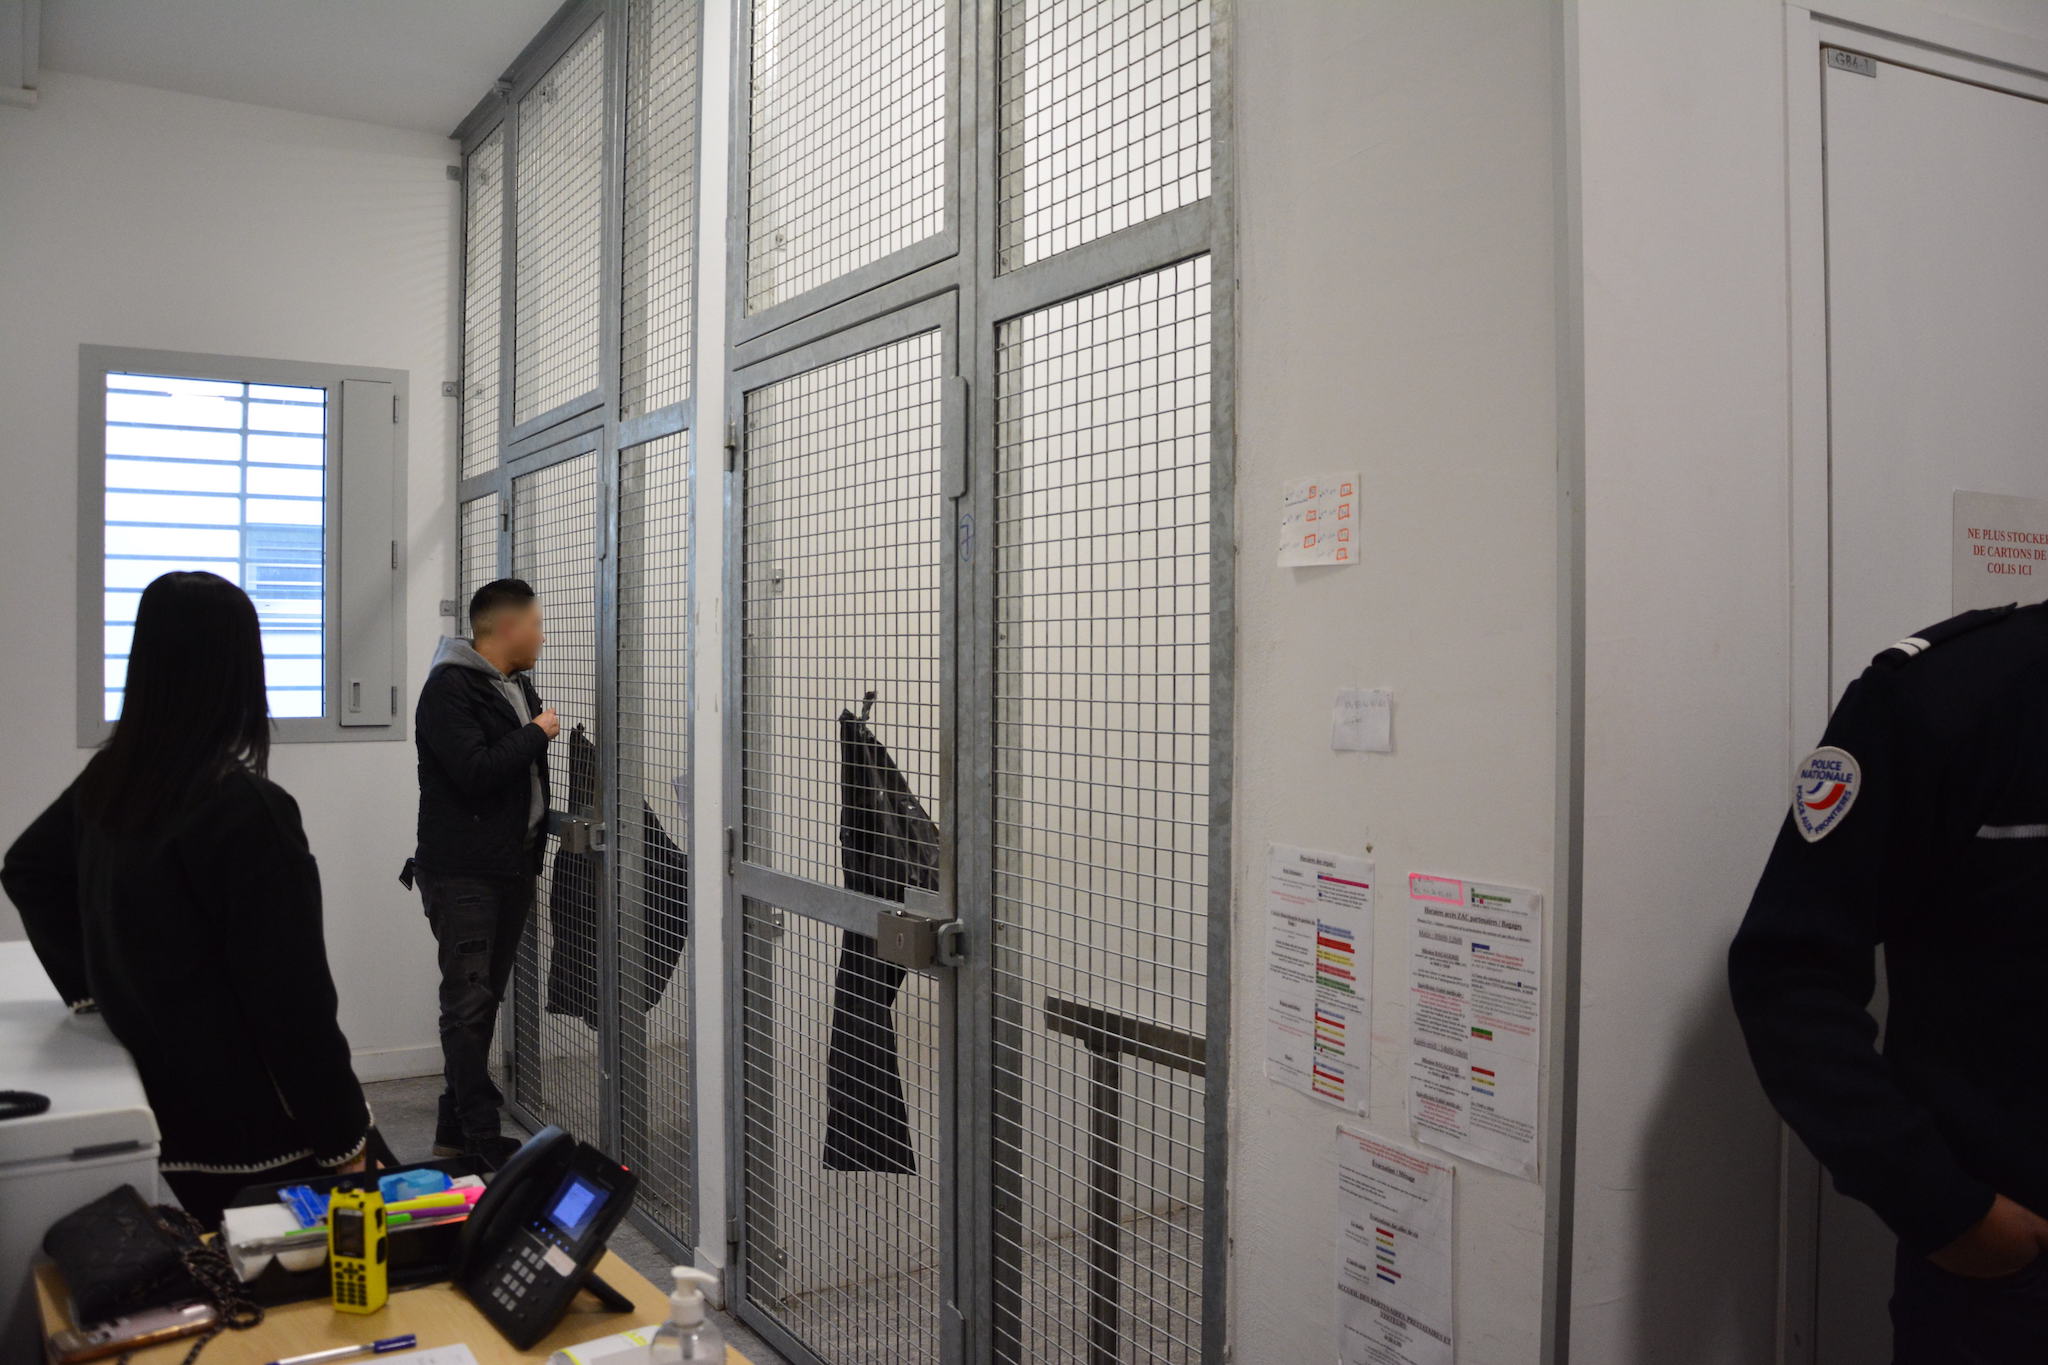 Le Centre de rétention administrative 2 de Lyon, aux airs de prison, peut accueillir jusqu'à 140 retenus étrangers. ©Pierre Lemerle/Rue89Lyon